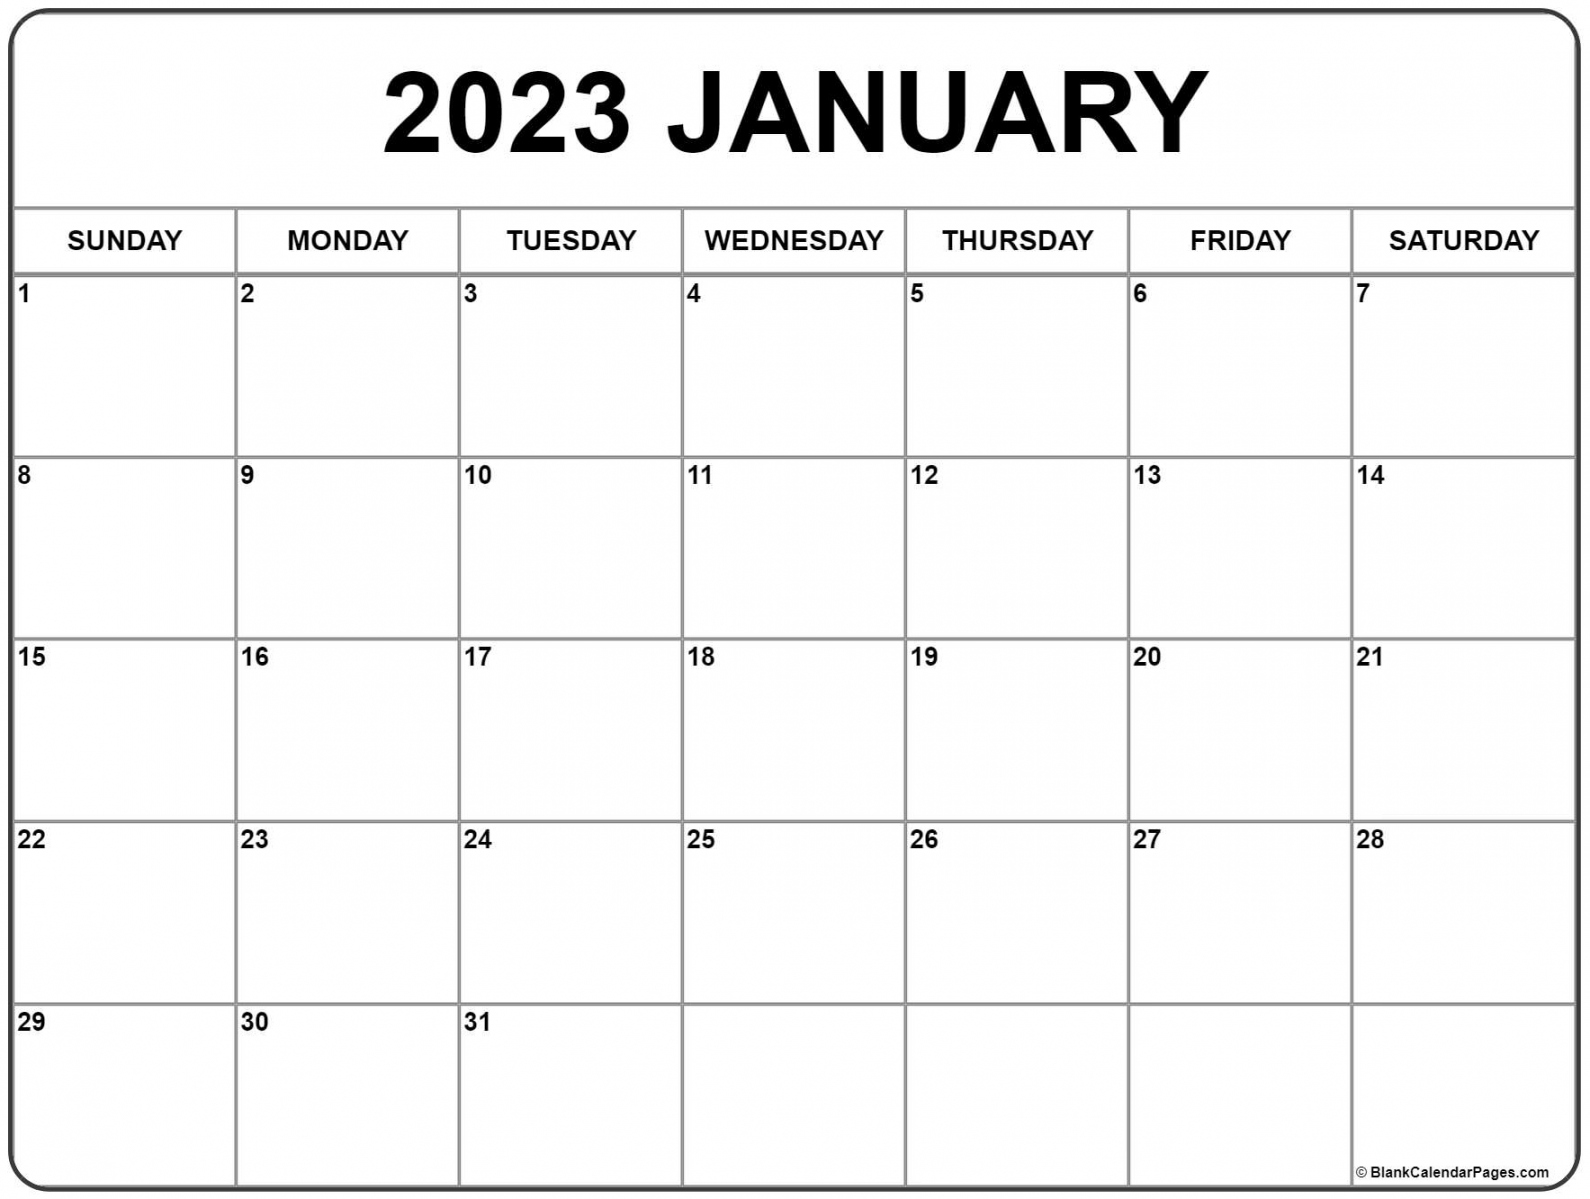 2023 Printable Calendar Free - Printable - January  calendar  free printable calendar